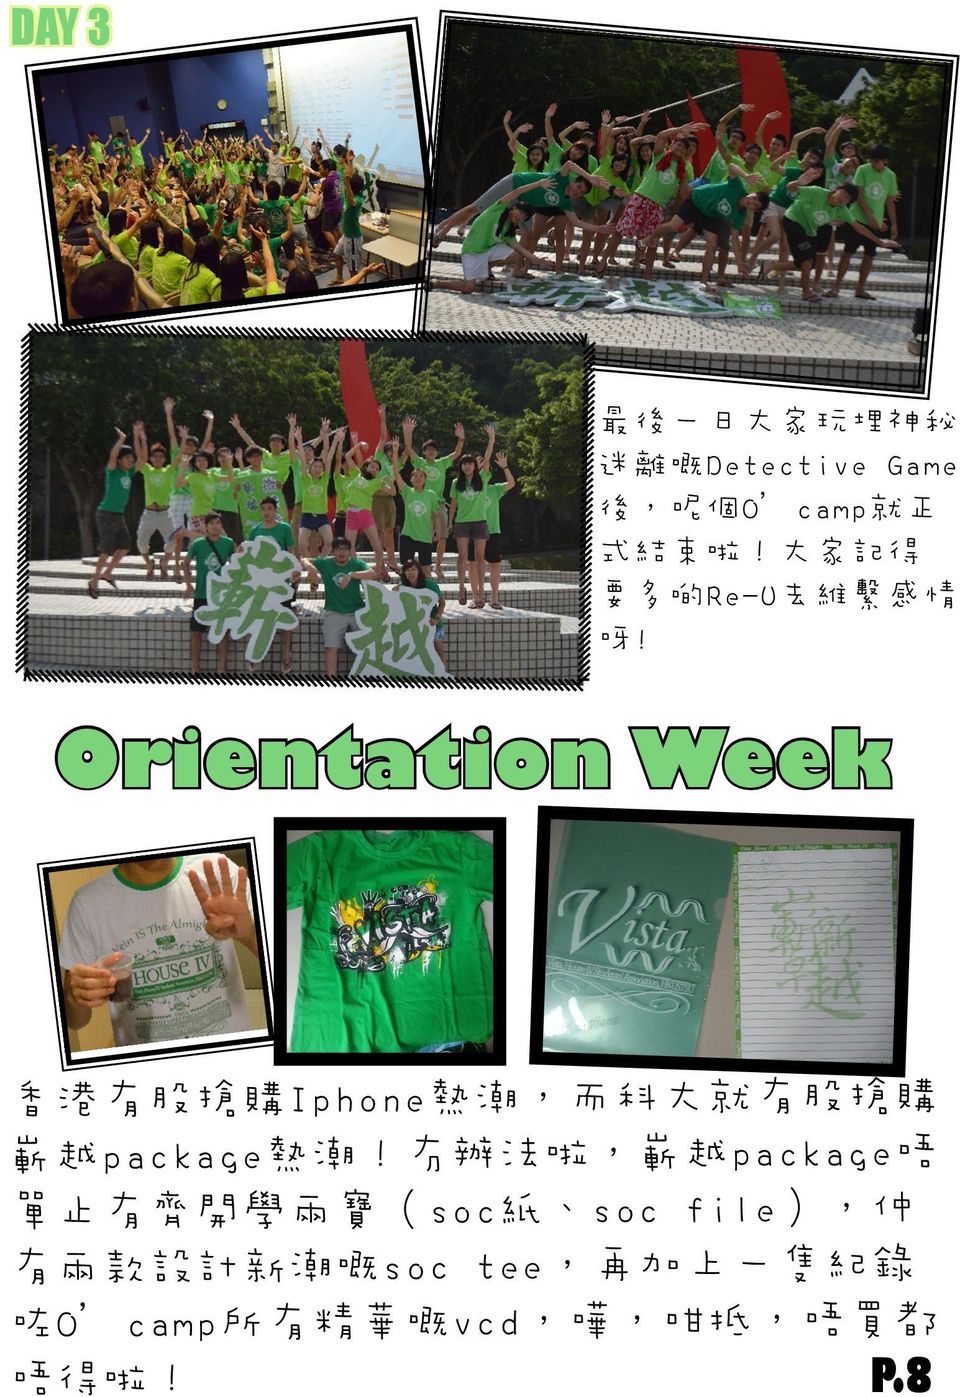 Orientation Week 香 港 有 股 搶 購 Iphone 熱 潮, 而 科 大 就 有 股 搶 購 嶄 越 package 熱 潮!